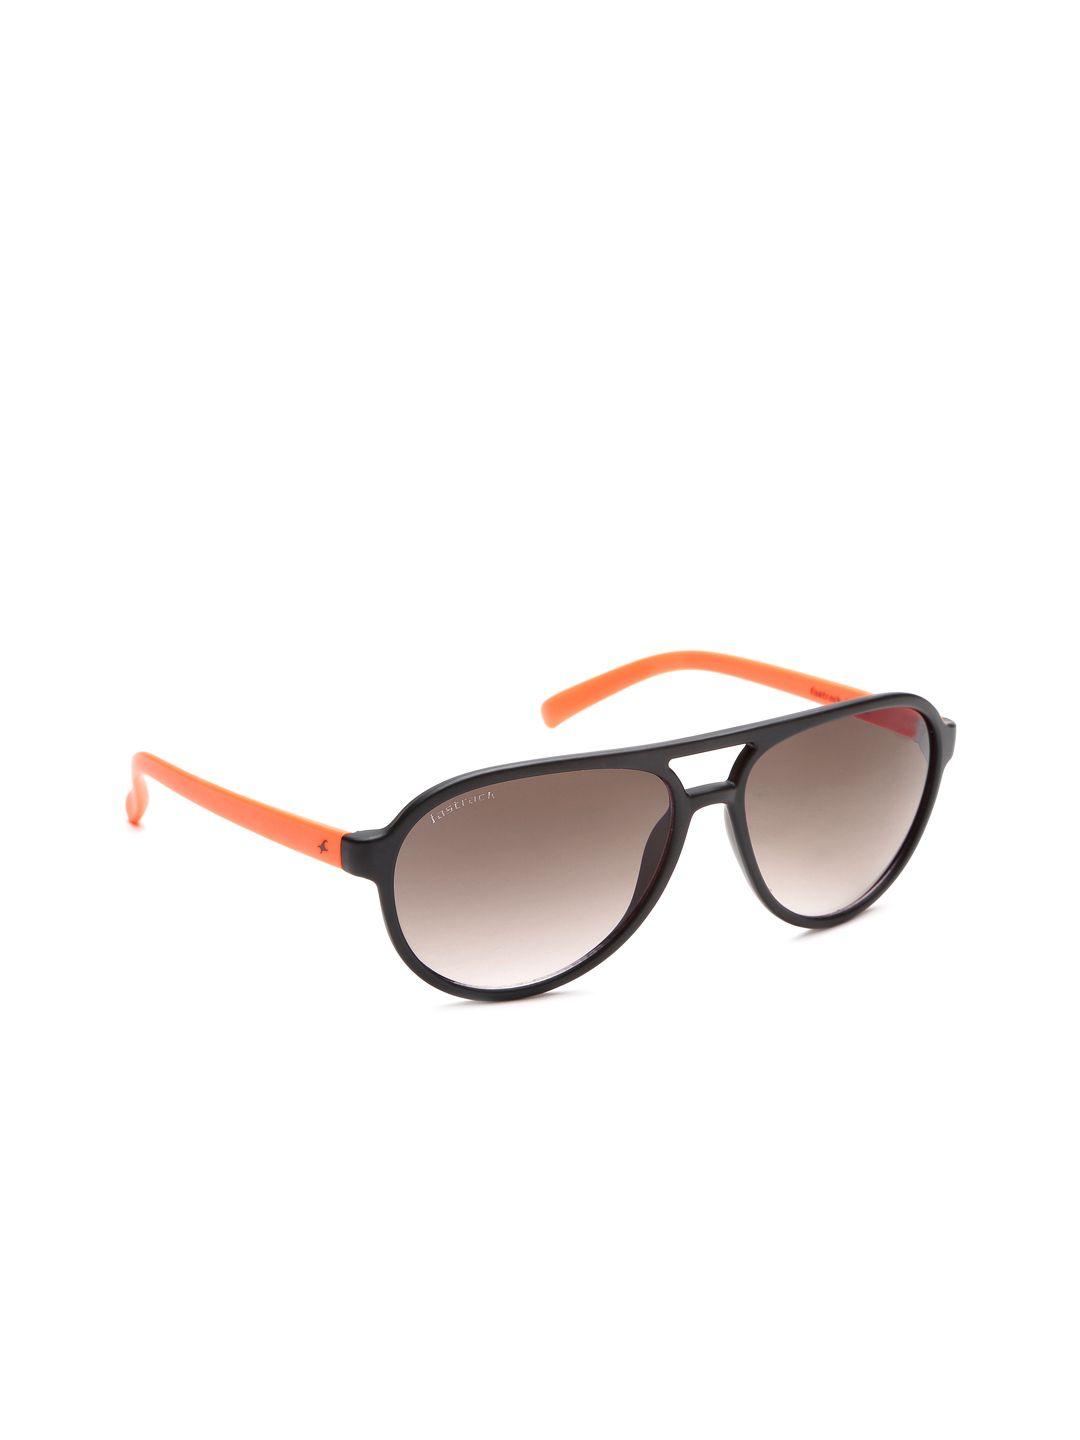 fastrack-men-gradient-sunglasses-p2976bk3